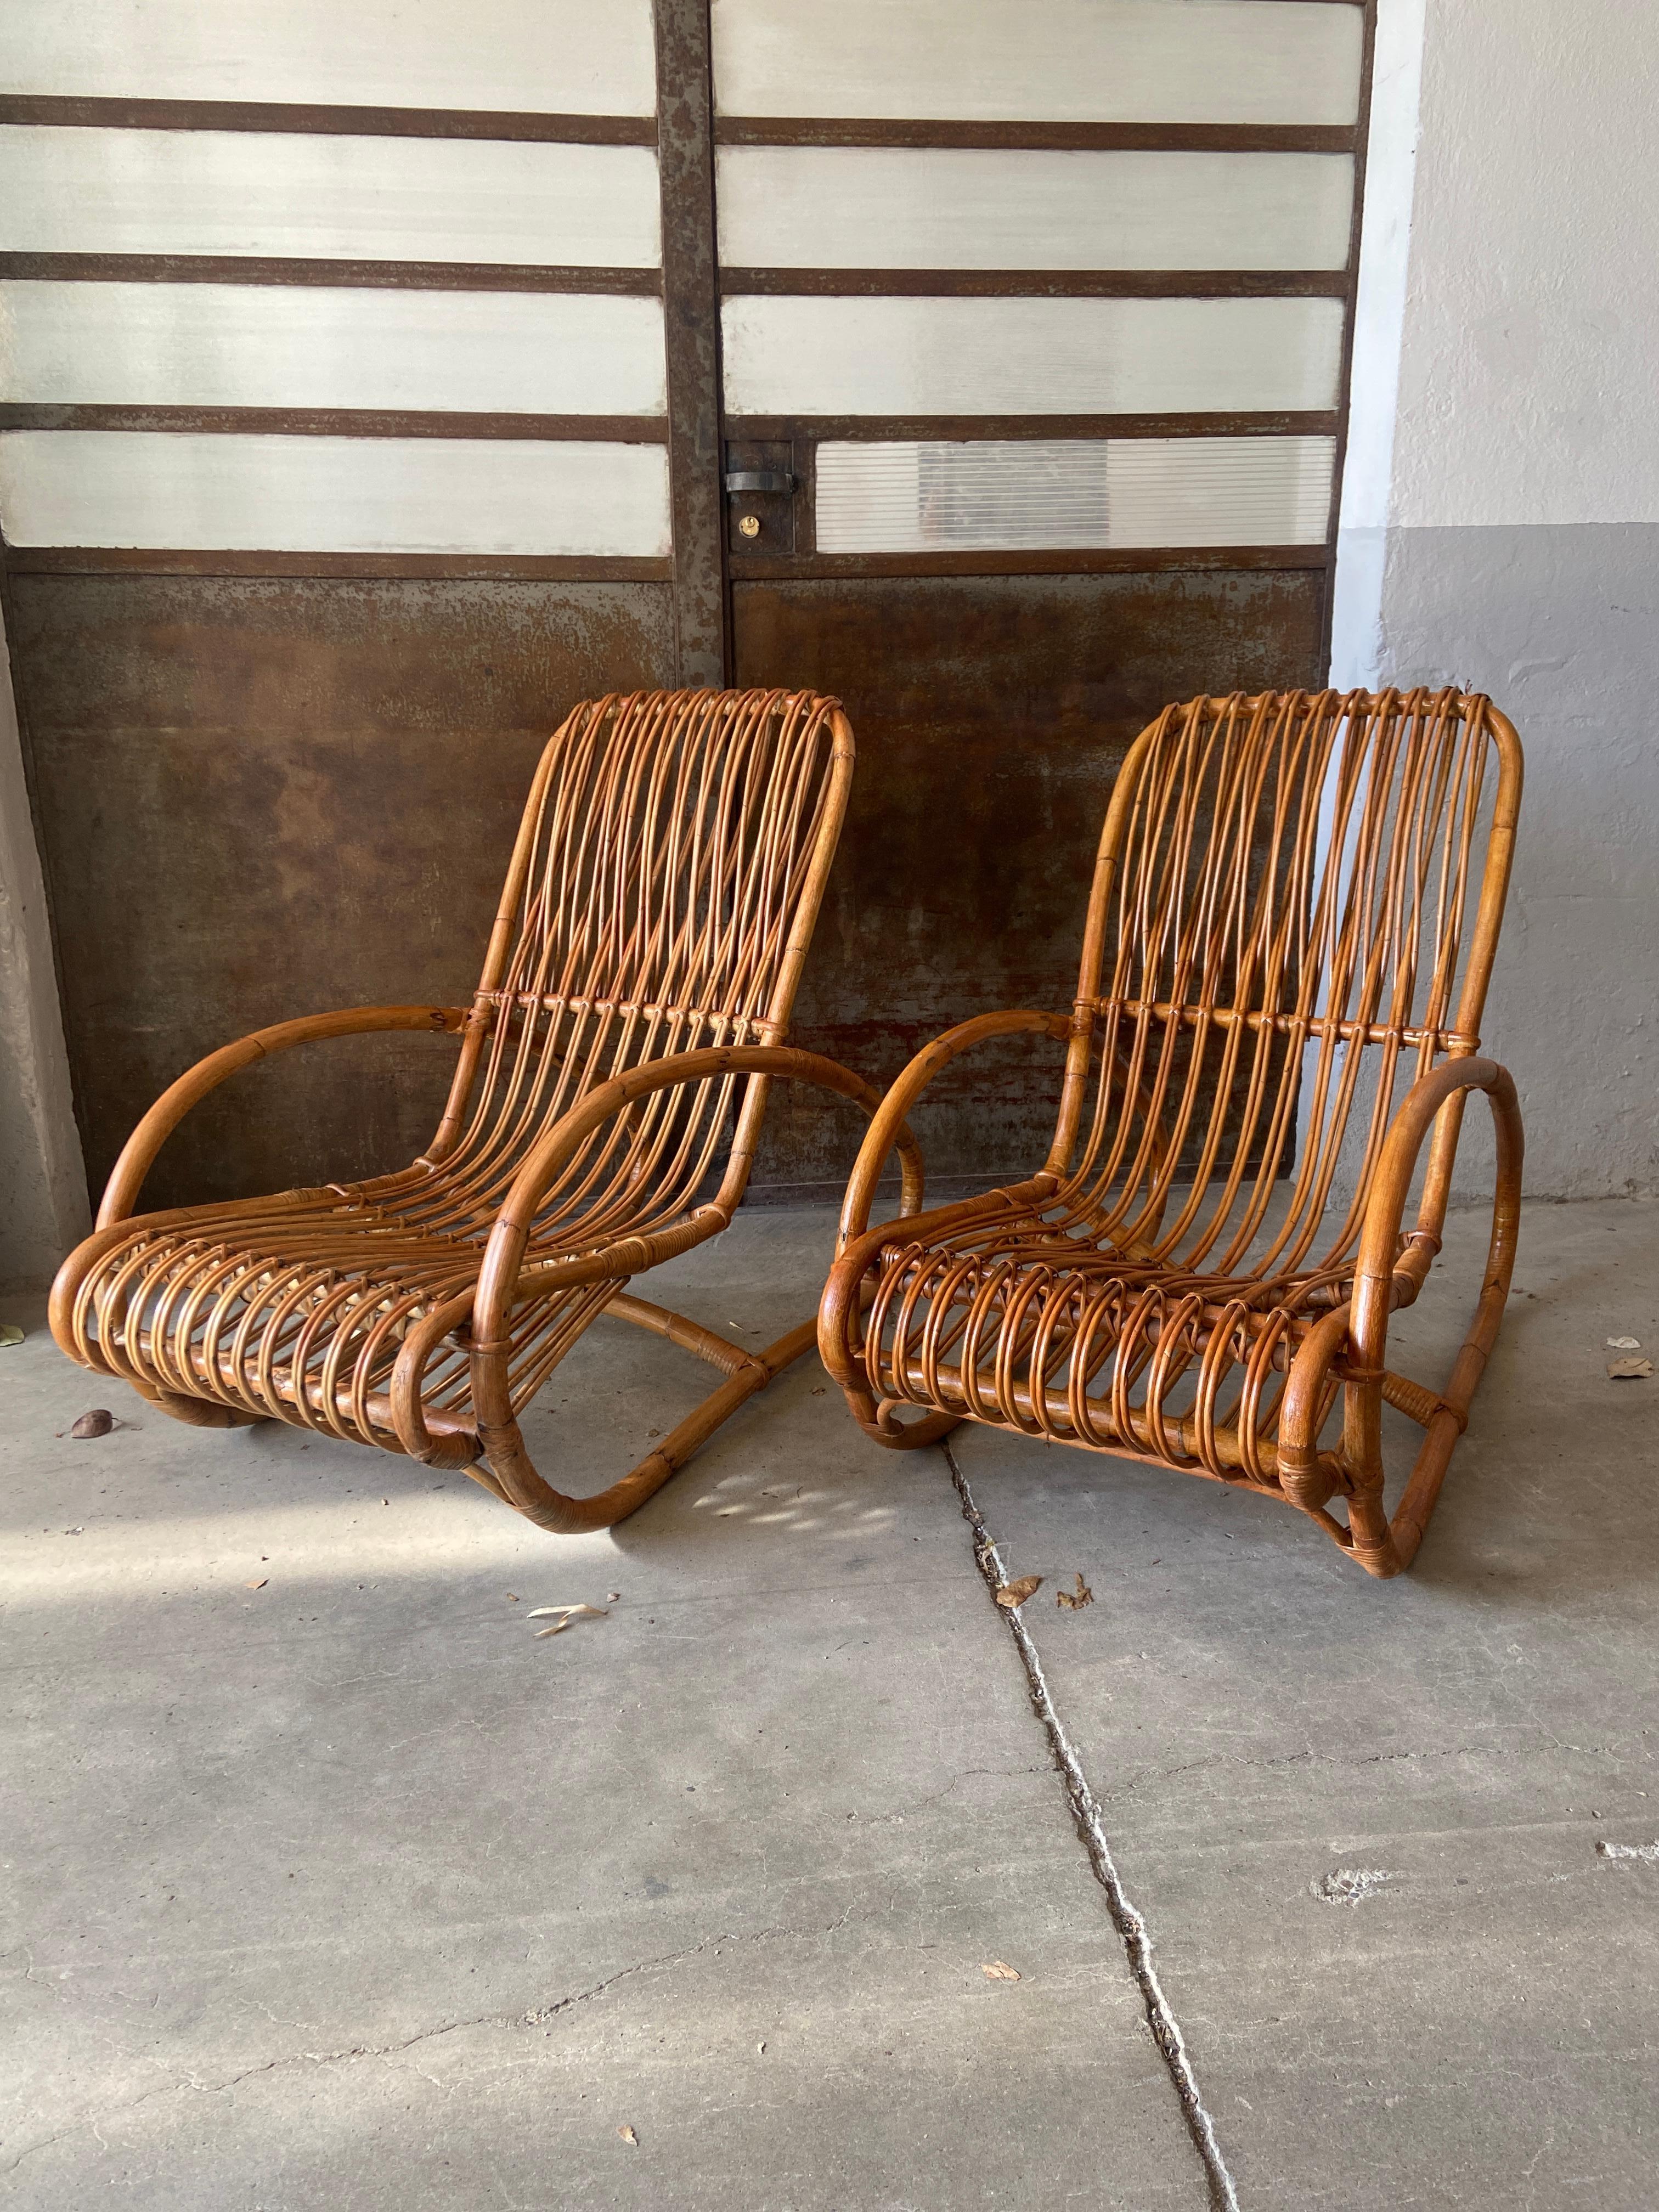 Mid-Century Modern Italian Pair of Bamboo and Rattan Lounge Chairs in the style of Bonacina.
Die Sessel sind in wirklich gutem Vintage-Zustand und haben eine schöne Patina aufgrund von Alter und Gebrauch